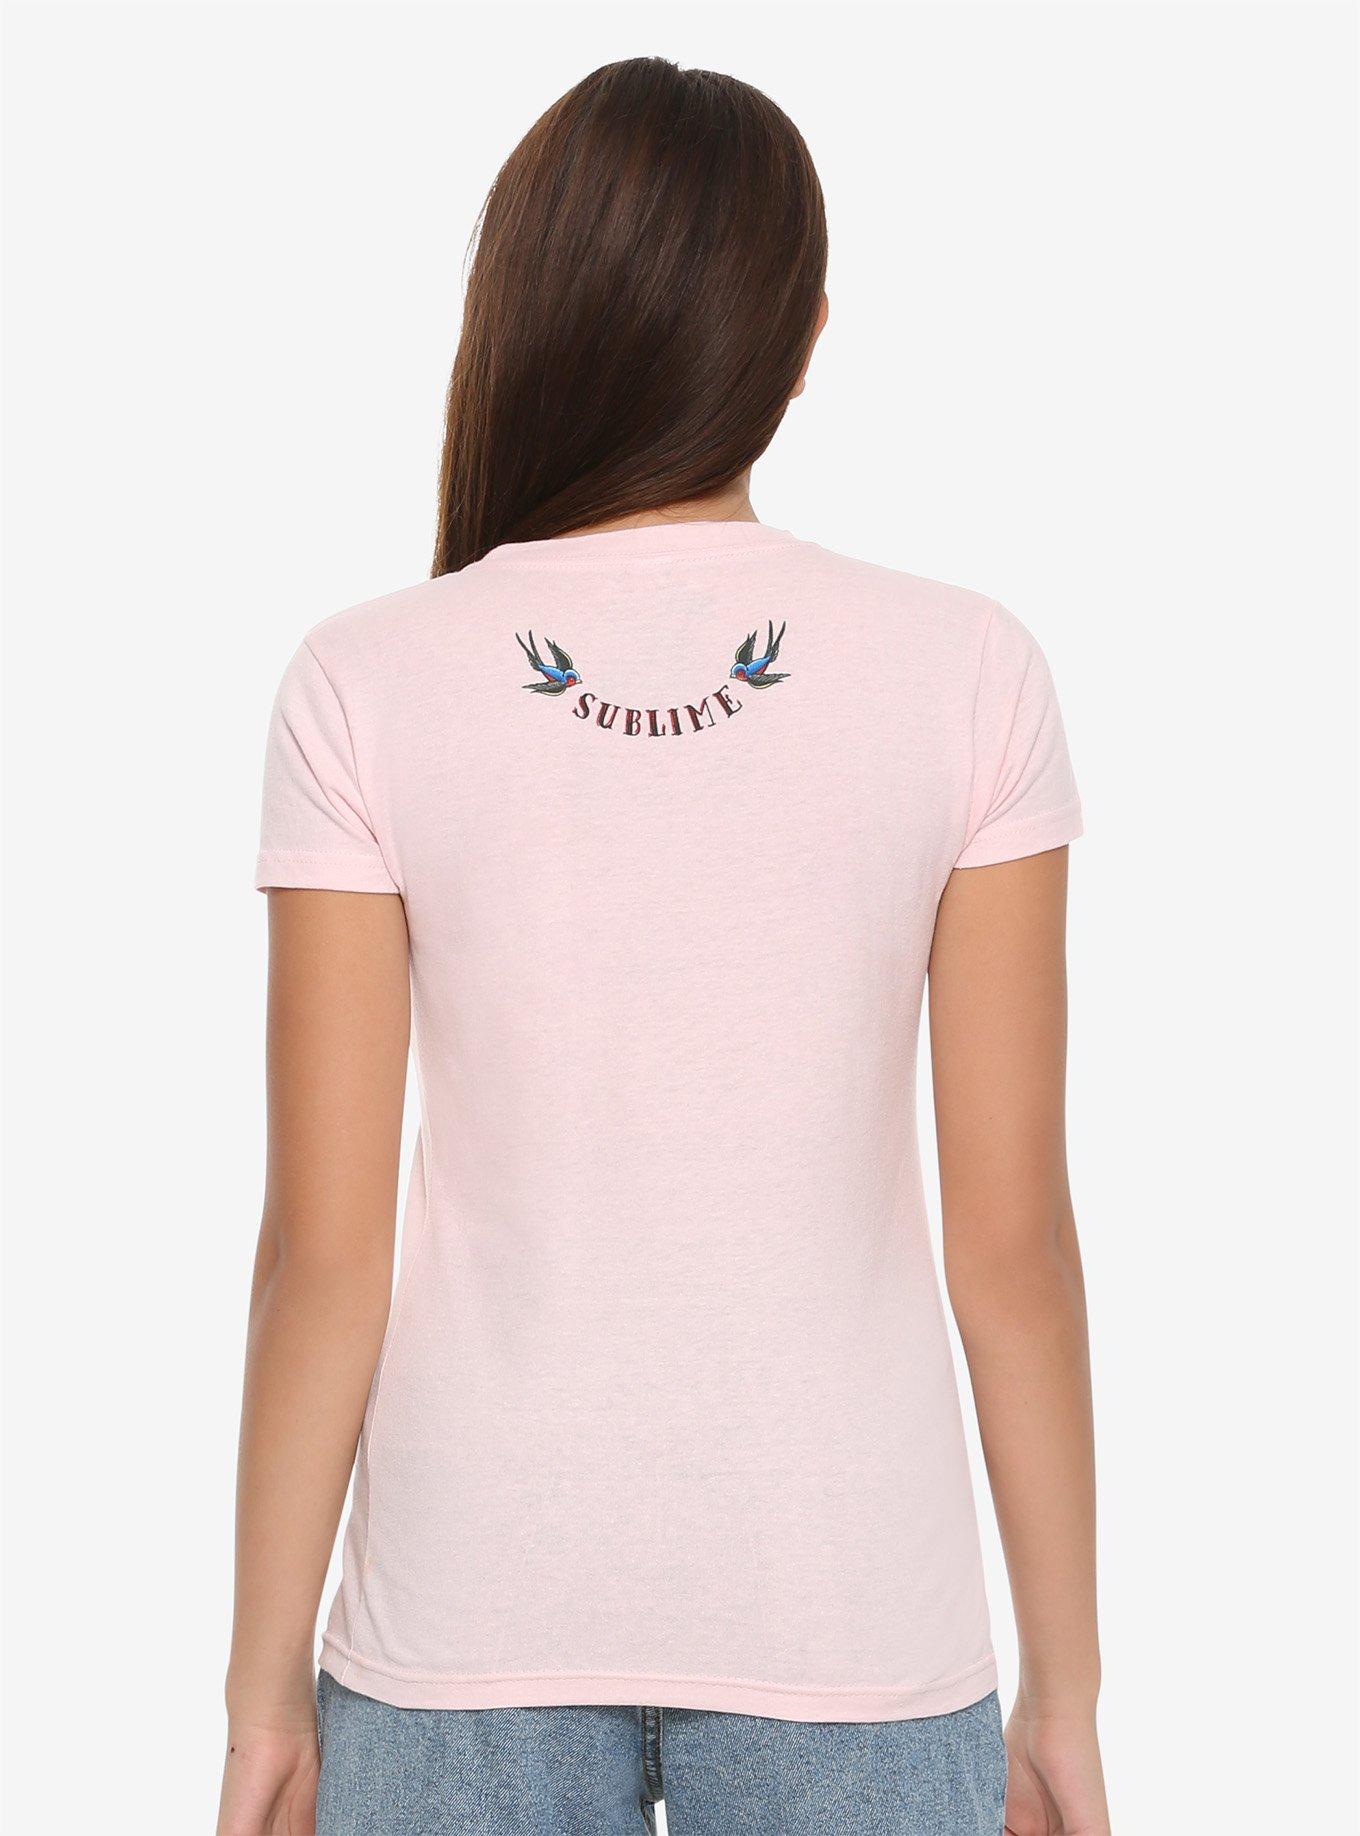 Sublime Summertime Girls T-Shirt, PINK, alternate